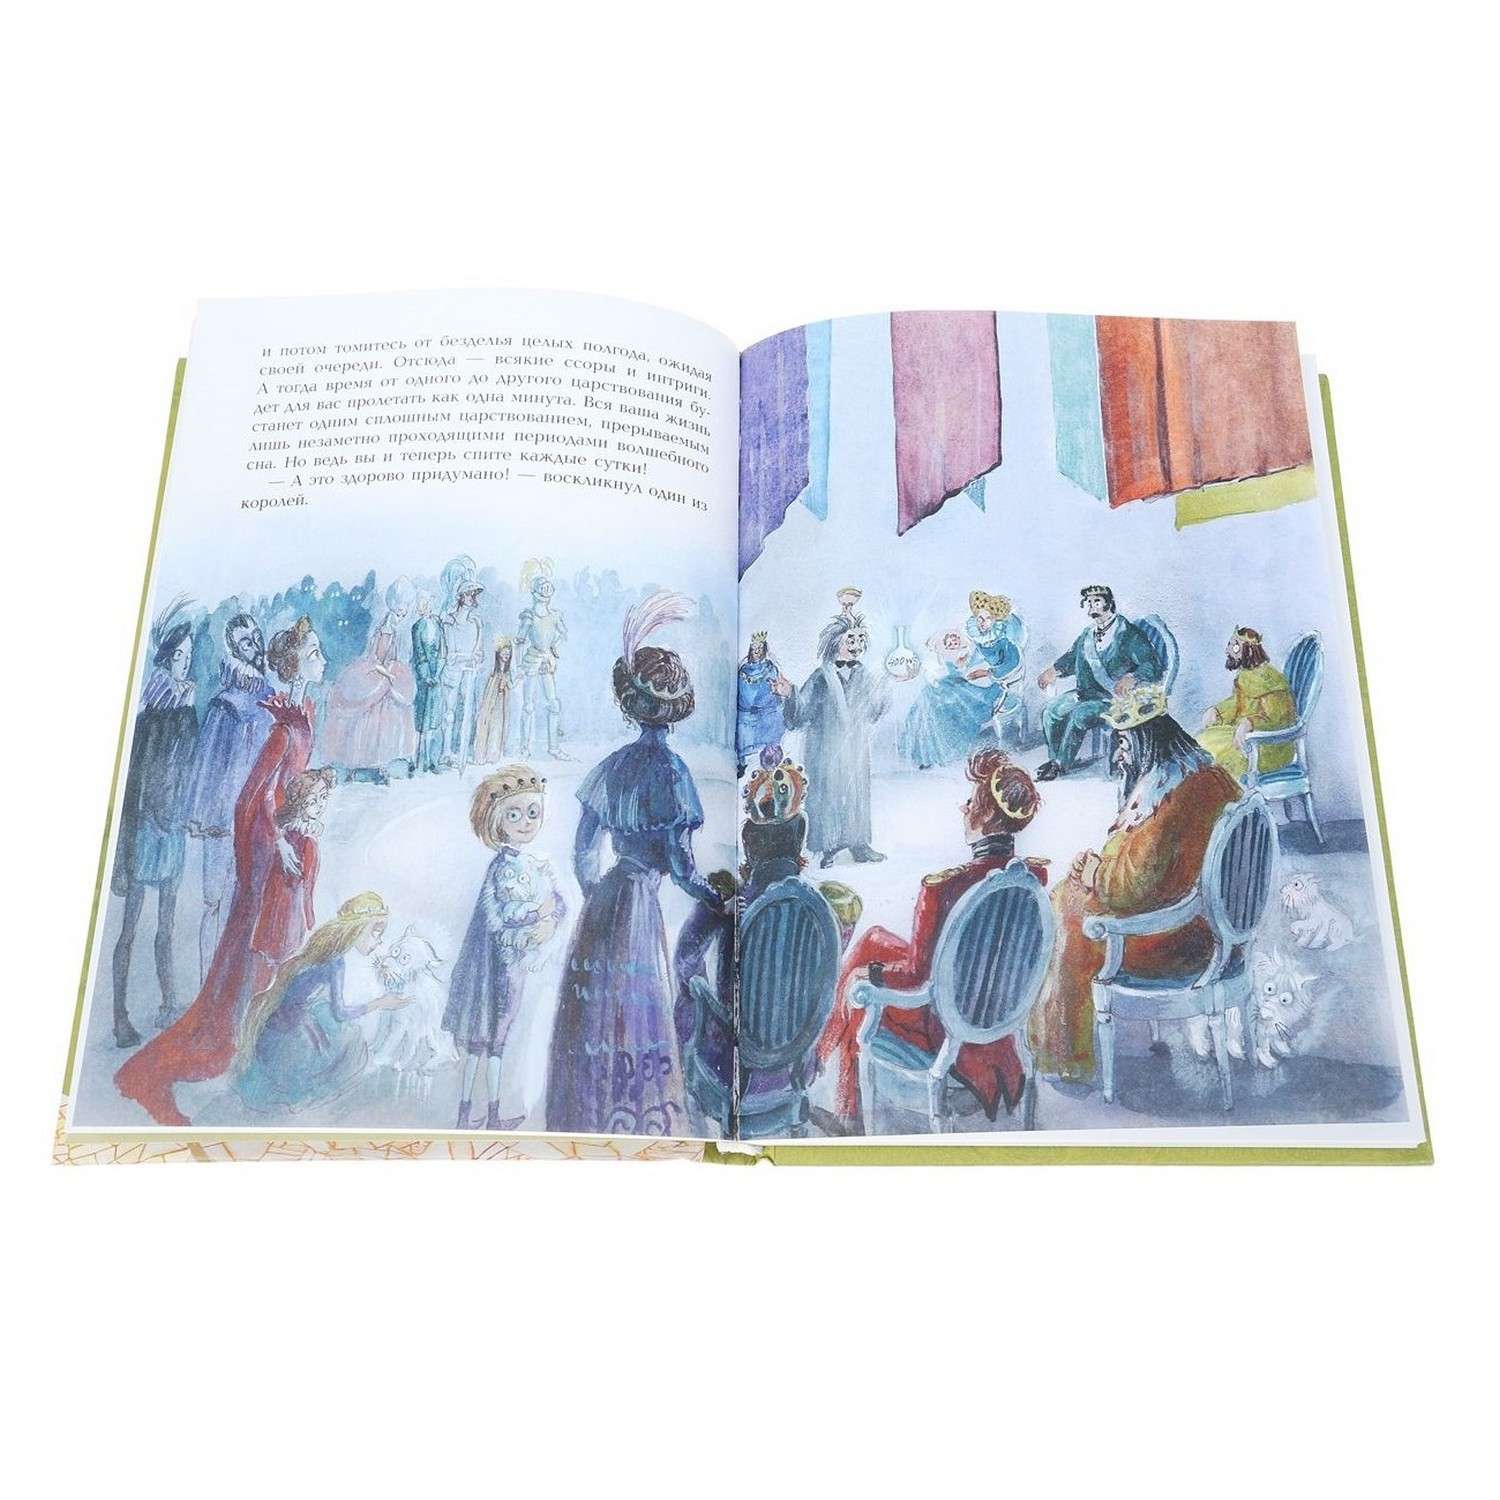 Книга Эксмо Семь подземных королей иллюстрации Власовой - фото 2